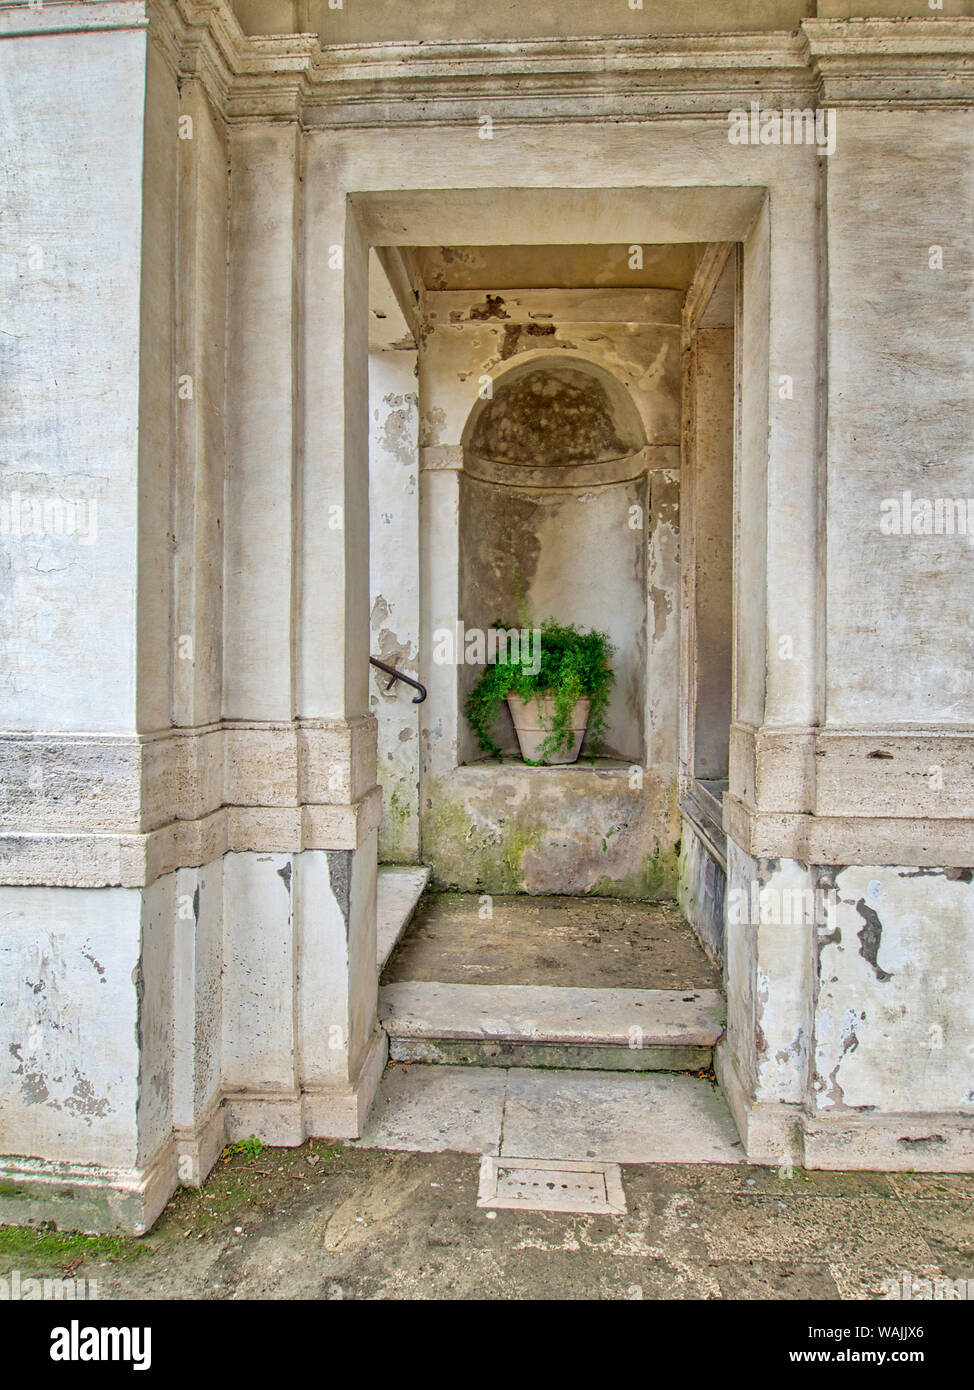 Italia, Lazio, Tivoli, Villa d'Este. Una planta en maceta en un pequeño arco esculpido por debajo de las escaleras. Foto de stock